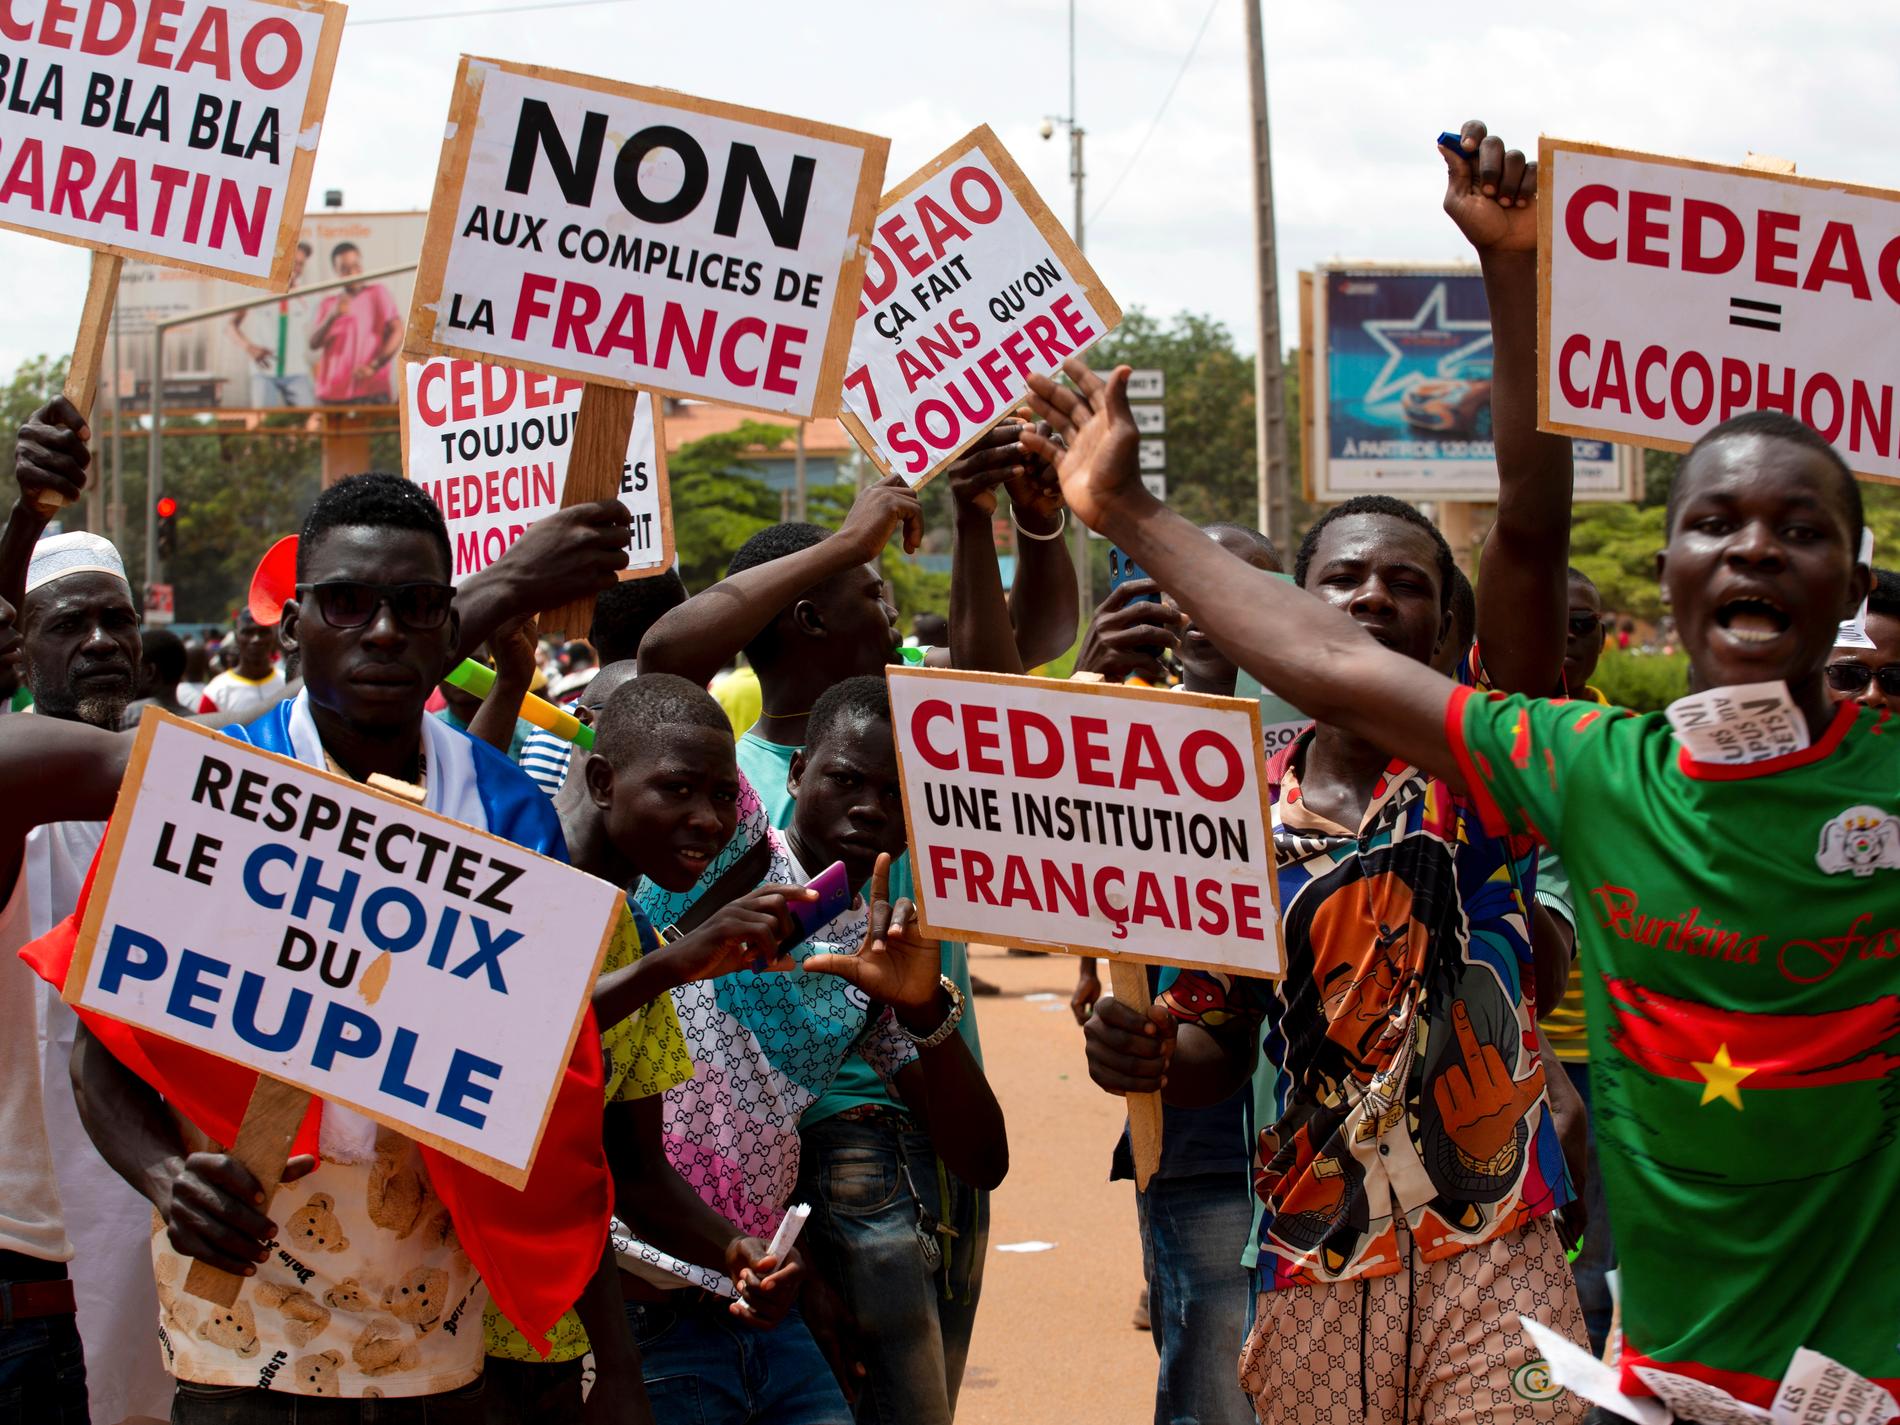 Fransk militär har lämnat Burkina Faso